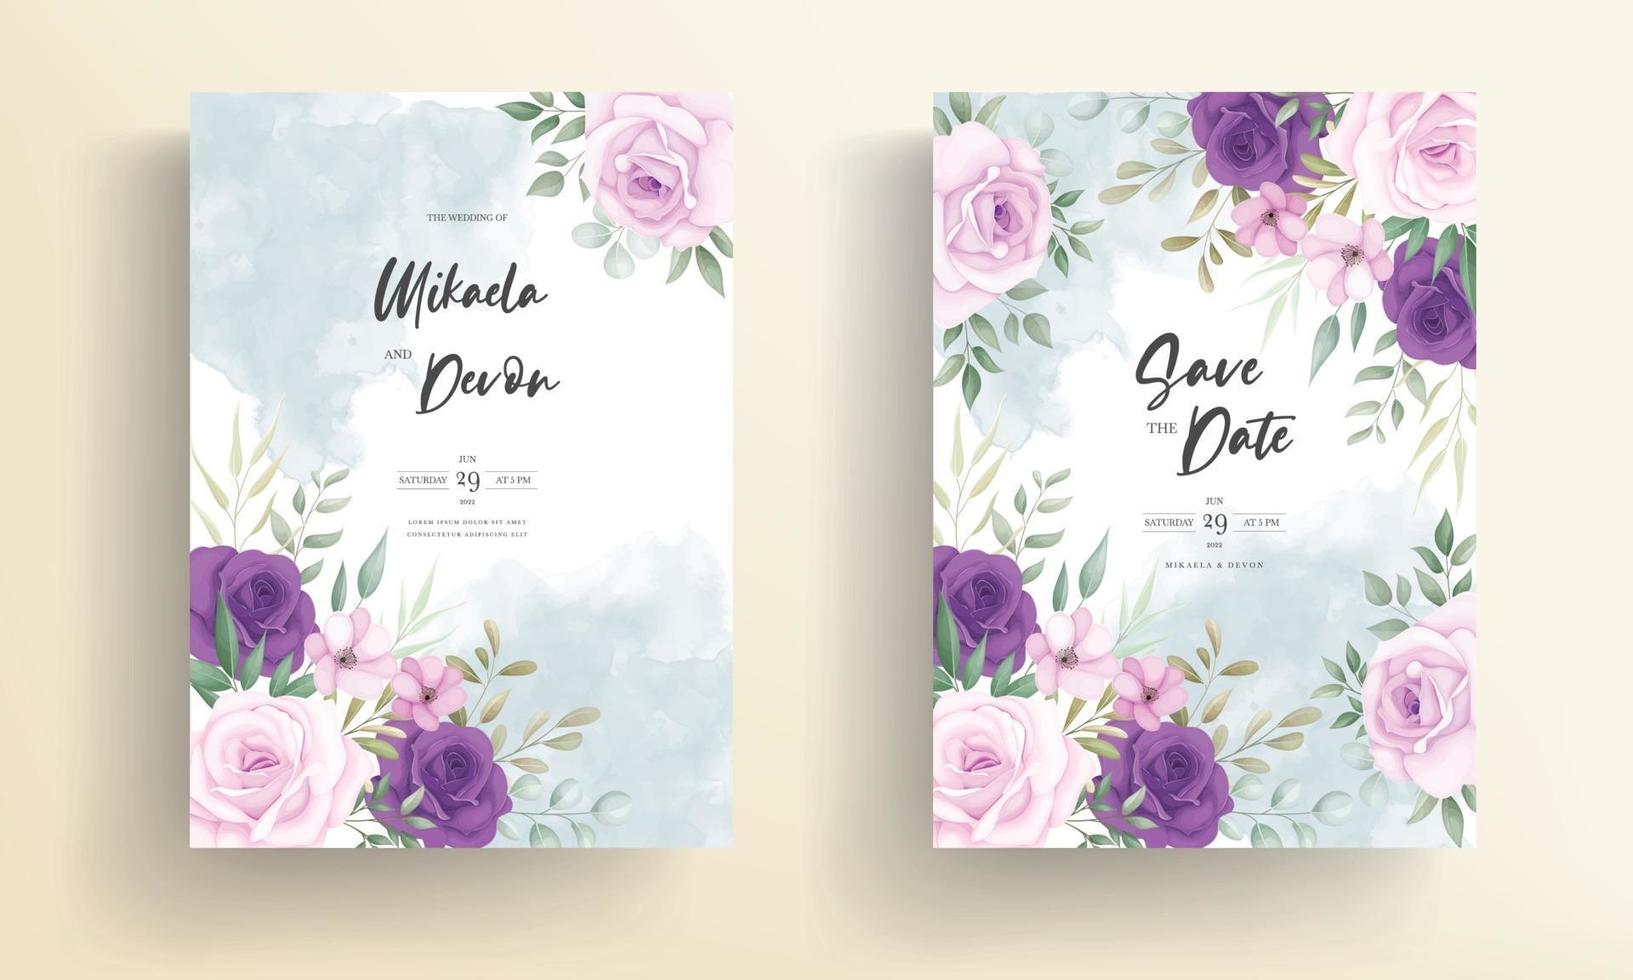 lindos designs de convites de casamento com lindos enfeites de flores vetor